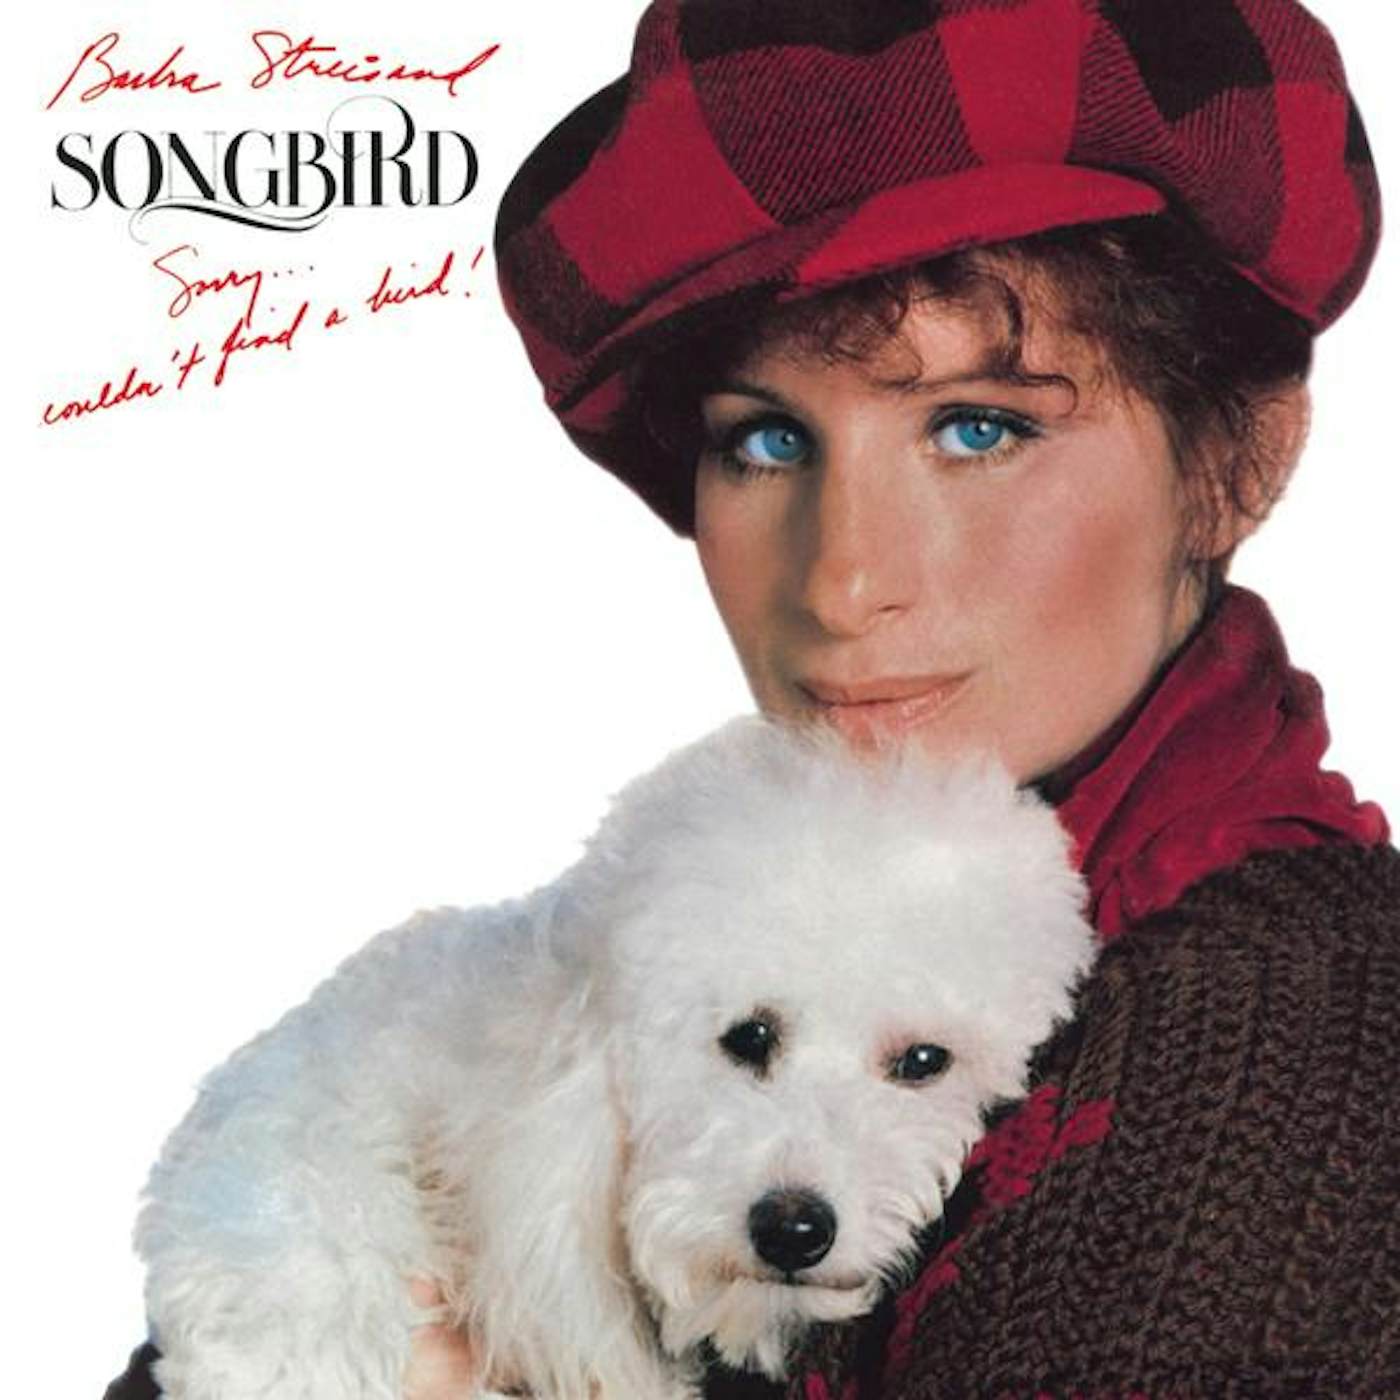 Barbra Streisand SONGBIRD CD